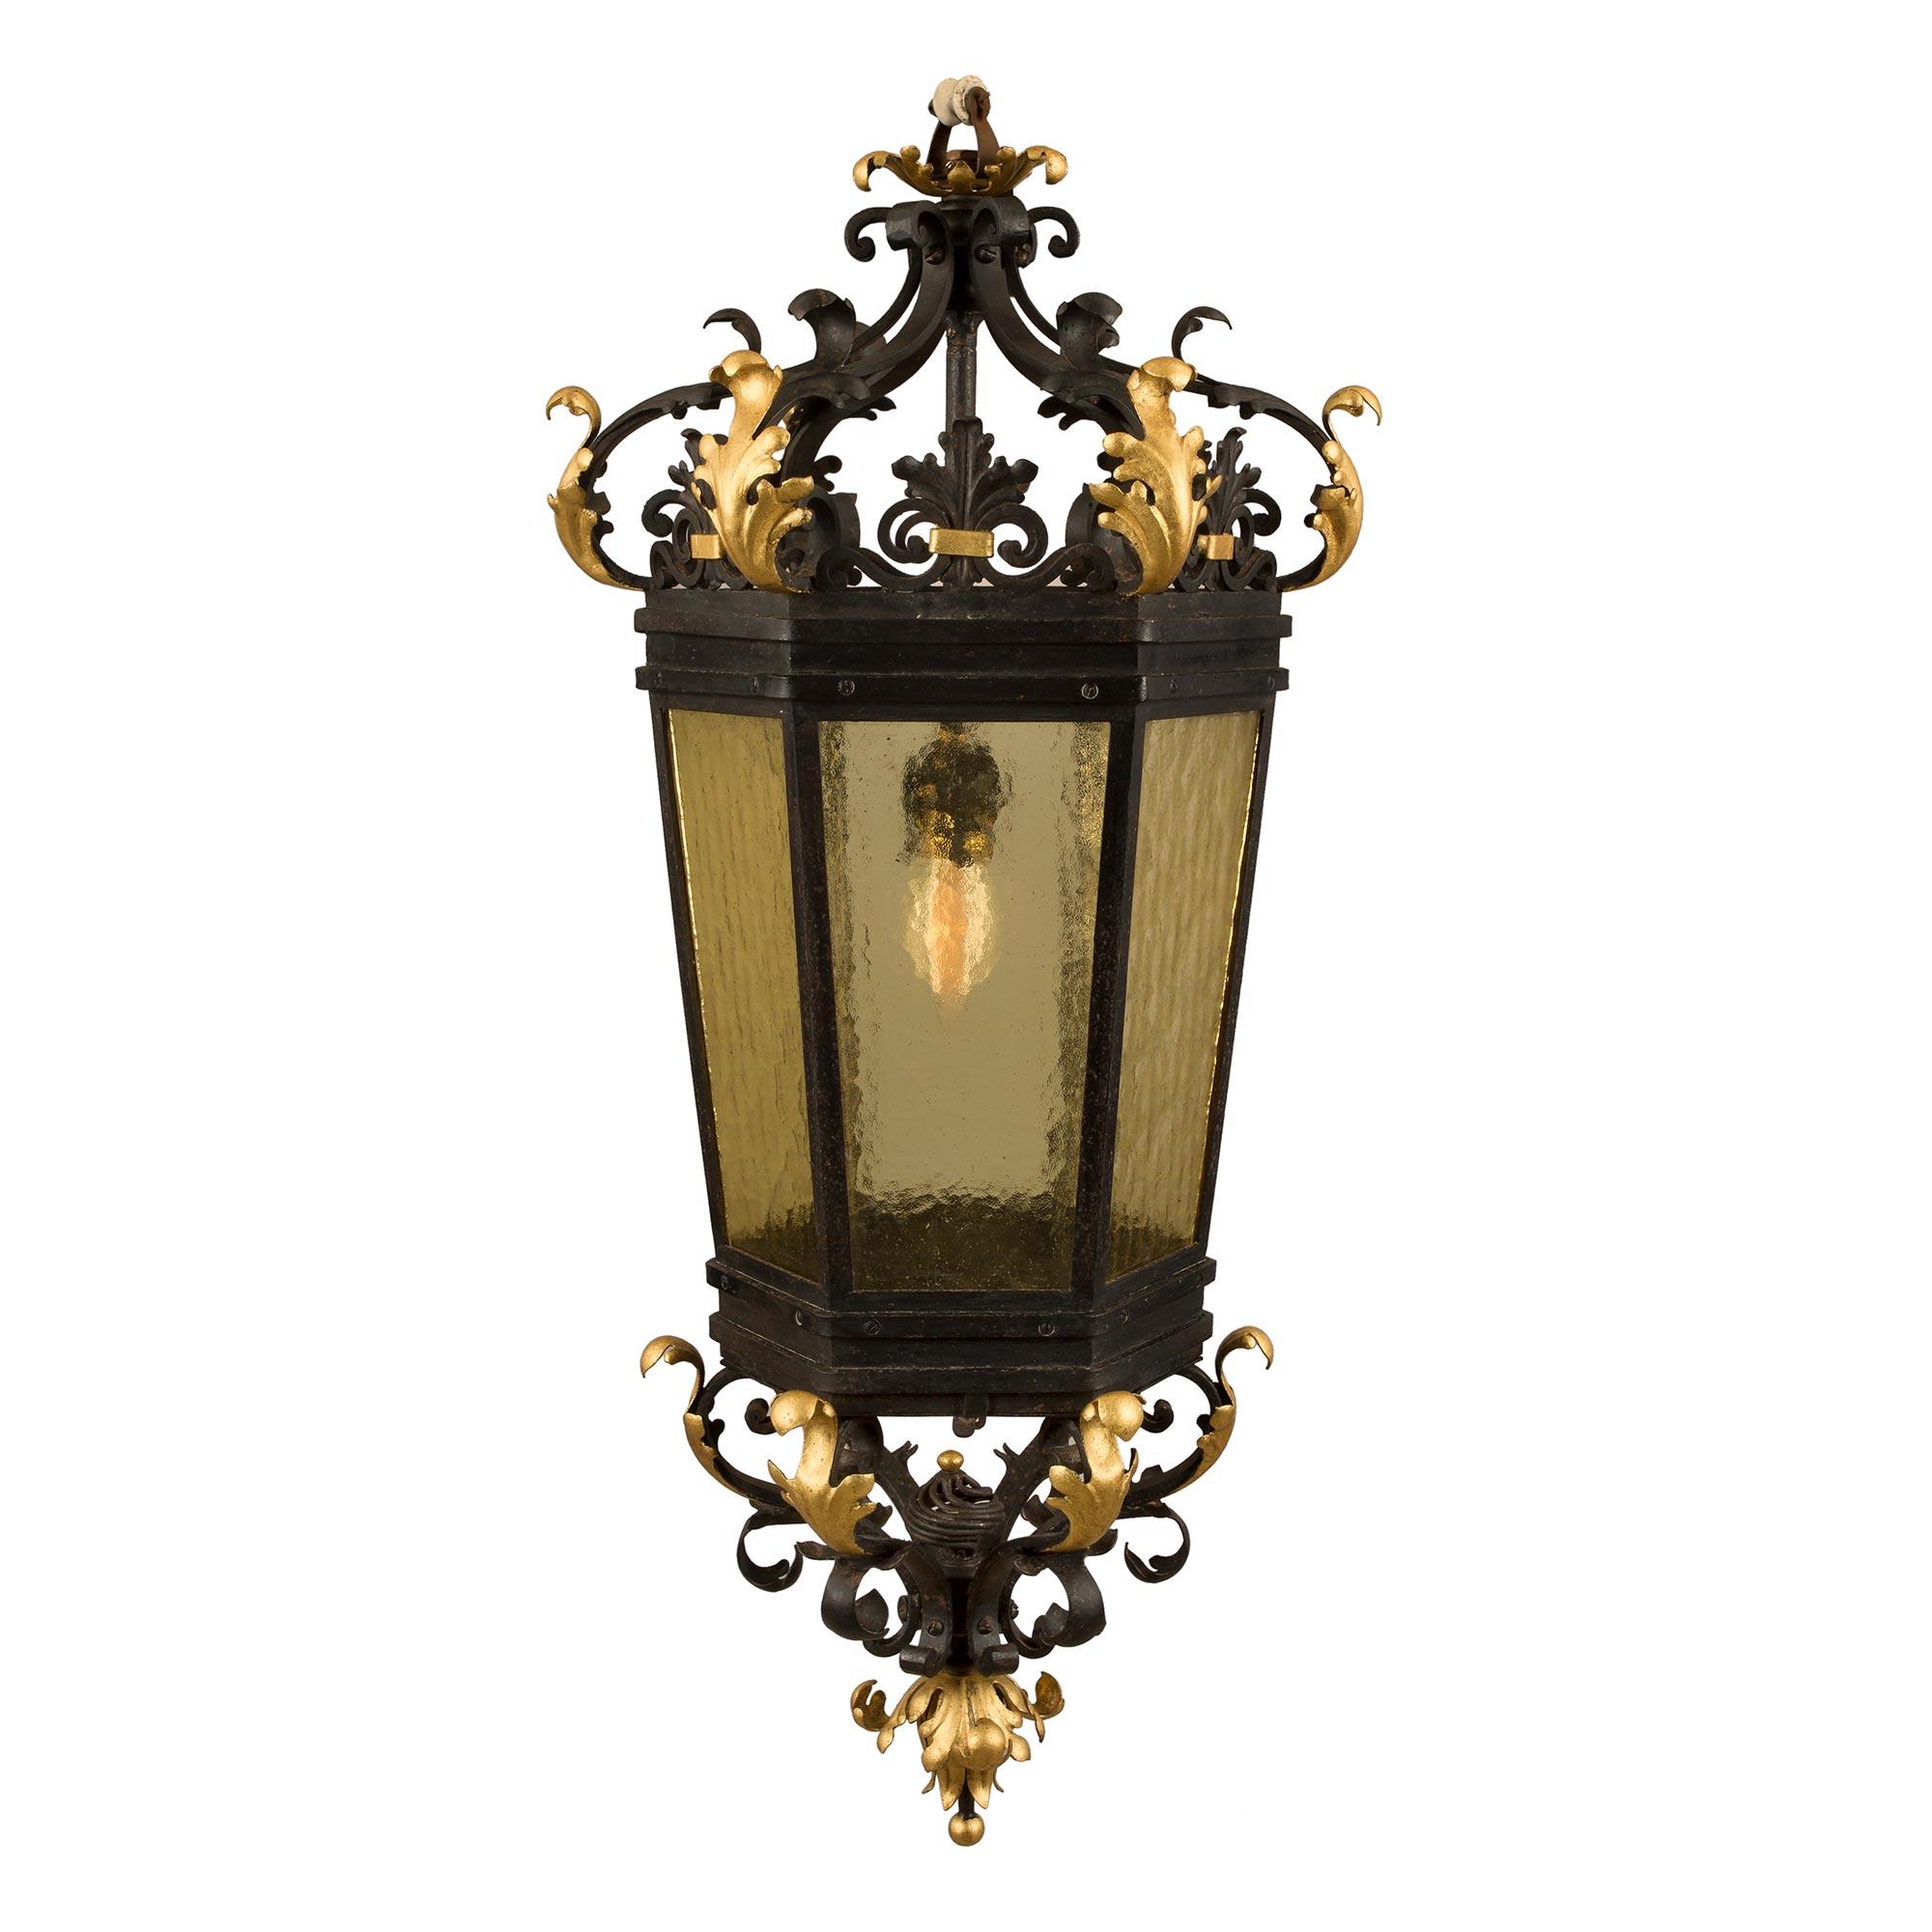 Italian 19th Century Renaissance Style Iron, Gilt Iron and Glass Lantern